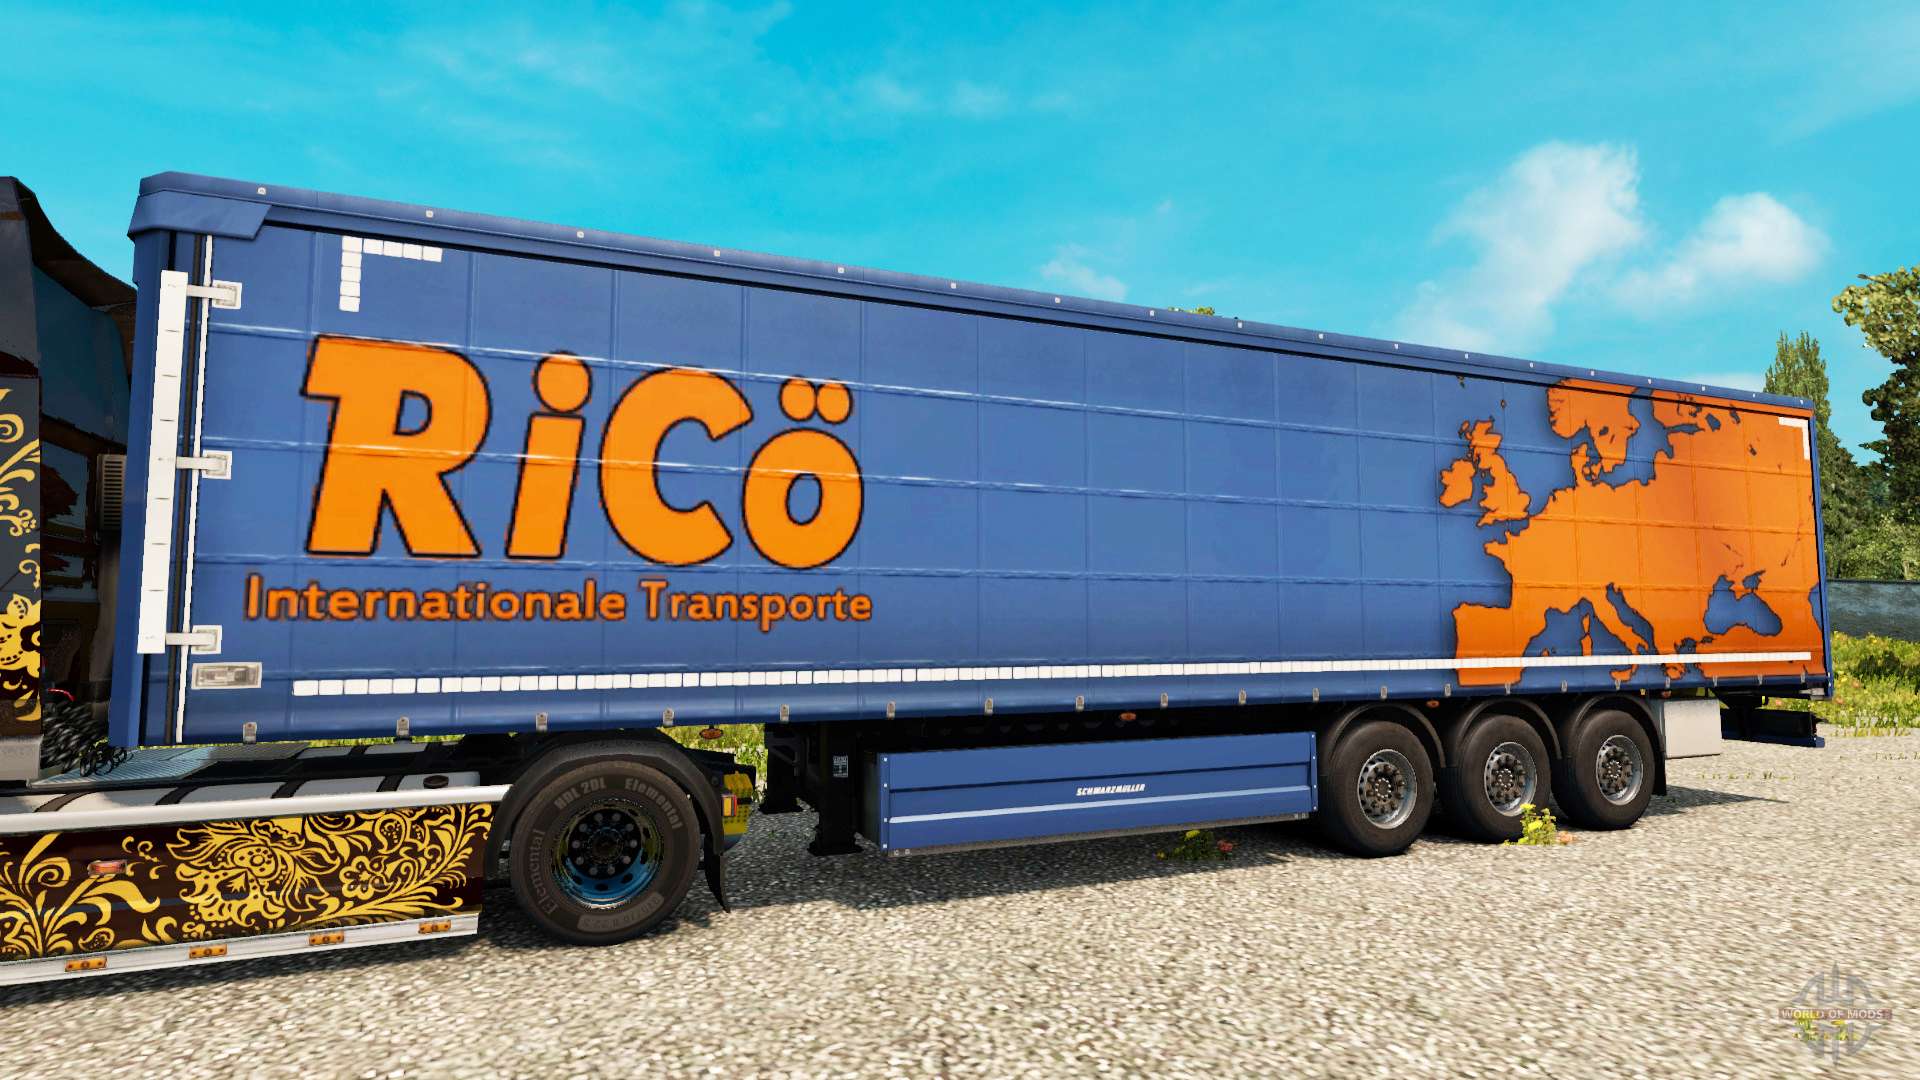 Pc euro truck simulator 2016 crack